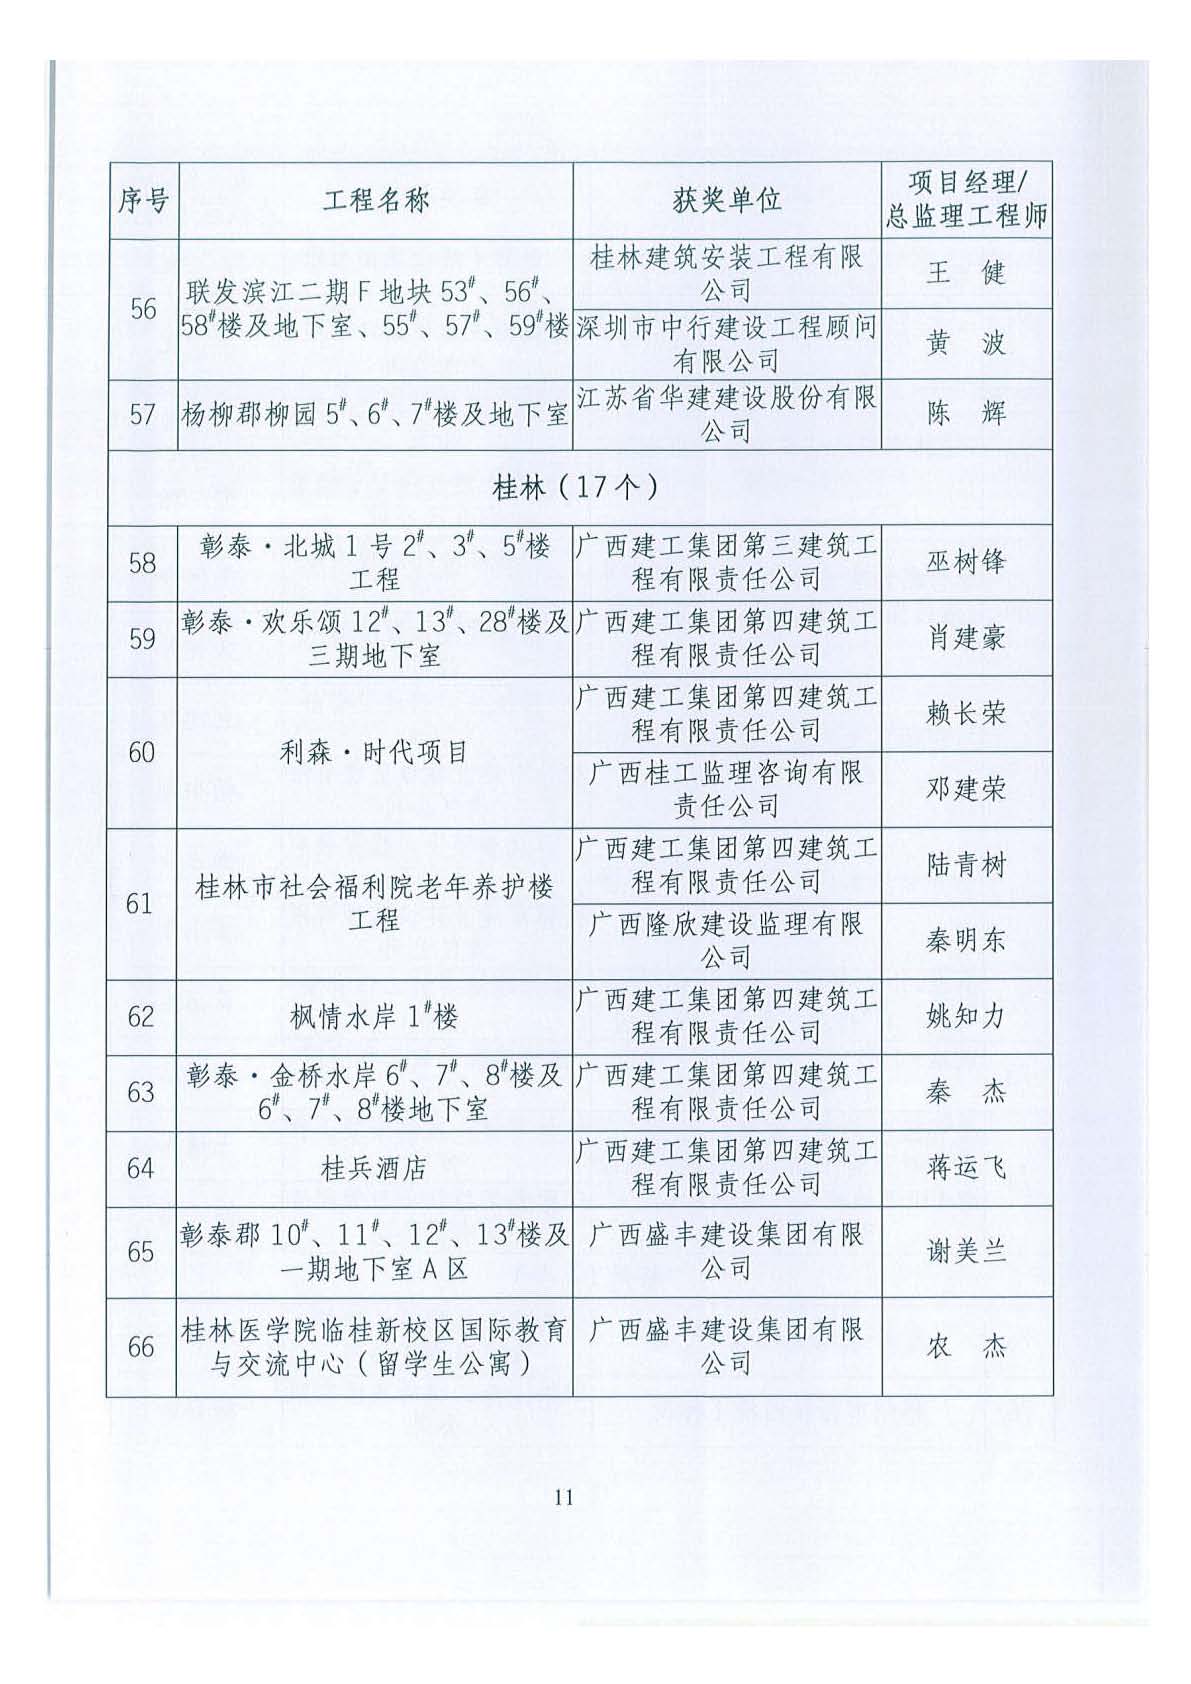 关于公布2018年下半年广西壮族自治区建设工程施工安全文明标准化工地的通知 _页面_11.jpg